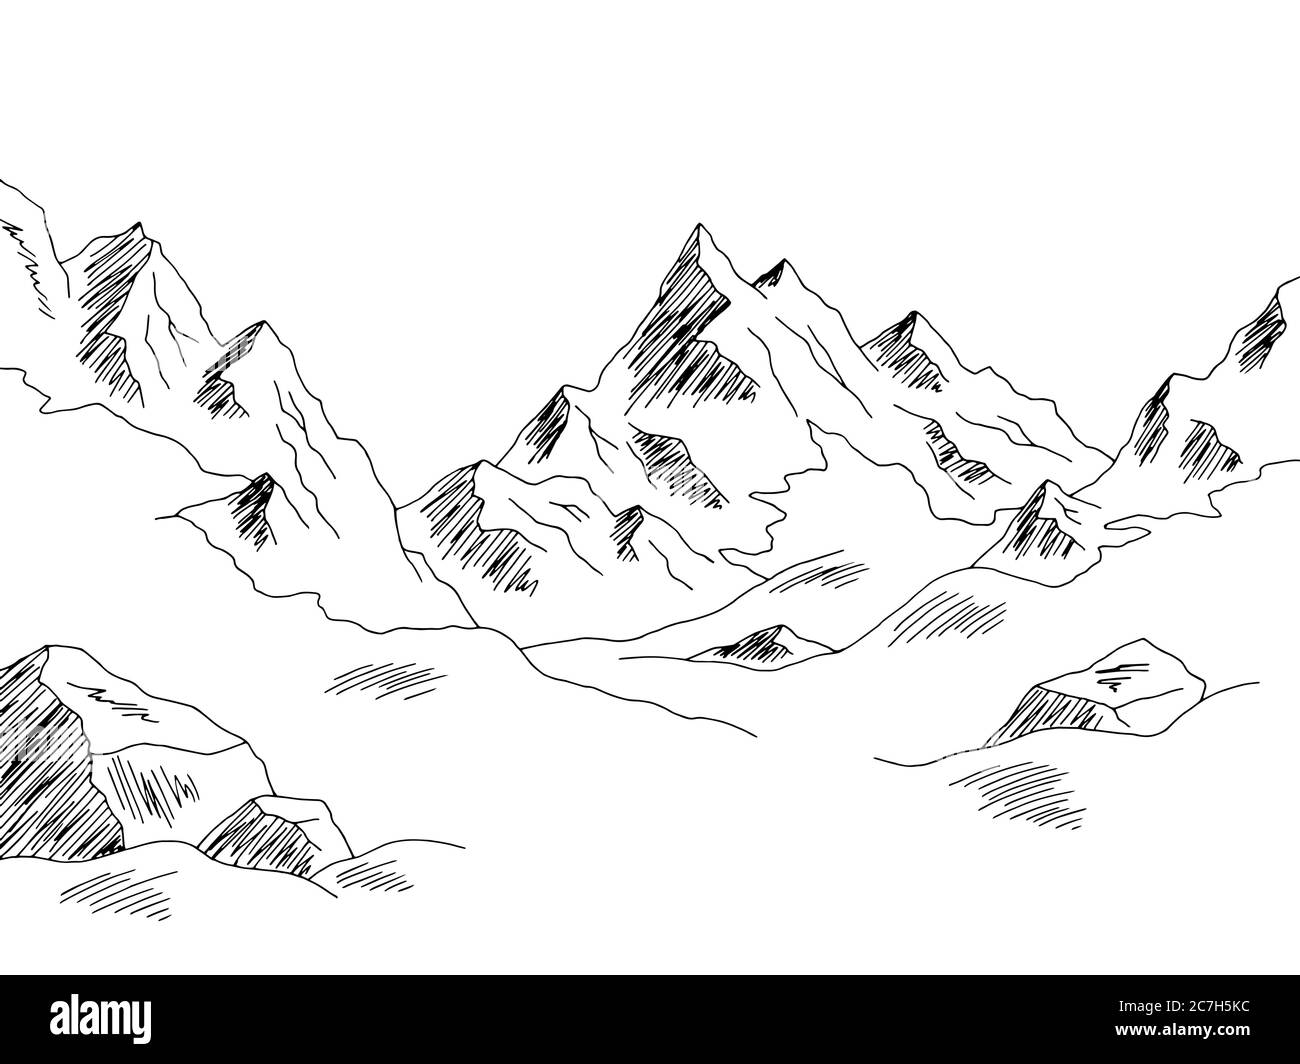 Glacier montagne collina grafica bianco nero disegno grafico paesaggio vettore illustrazione Illustrazione Vettoriale